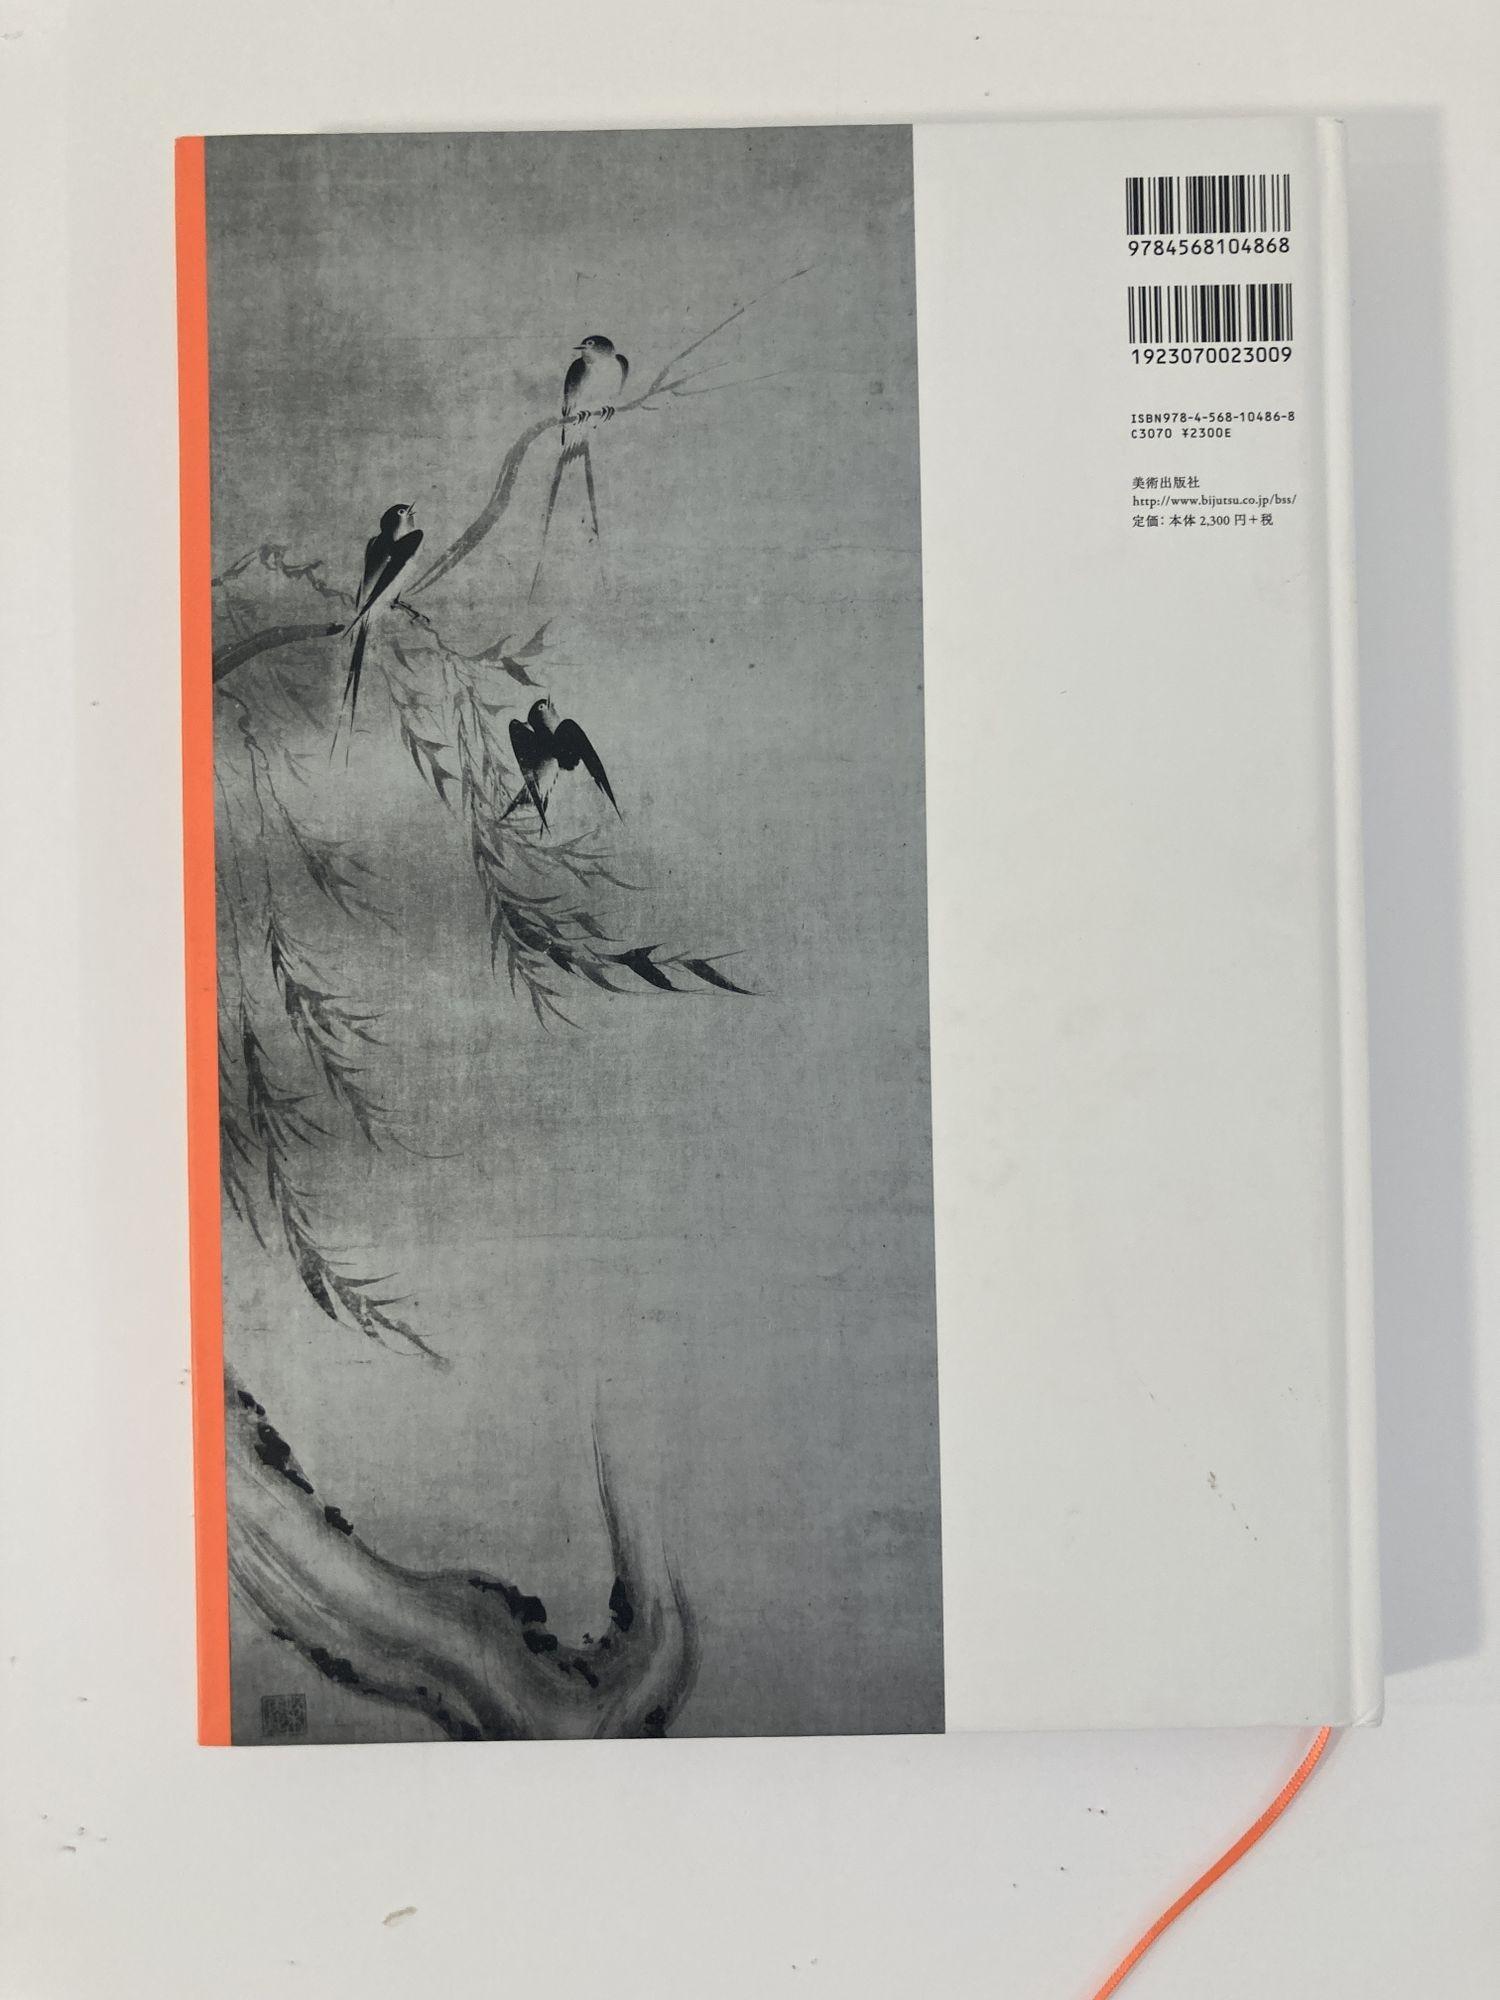 Meisterwerke aus der sanso-Sammlung: Japanische Gemälde von Peter F. Drucker und Doris Drucker.
Hardcover-Katalog Buch.
Text auf Englisch und Japanisch.
Luxe-Ausgabe.
Über 30 Jahre lang sammelte der Wirtschaftswissenschaftler und 